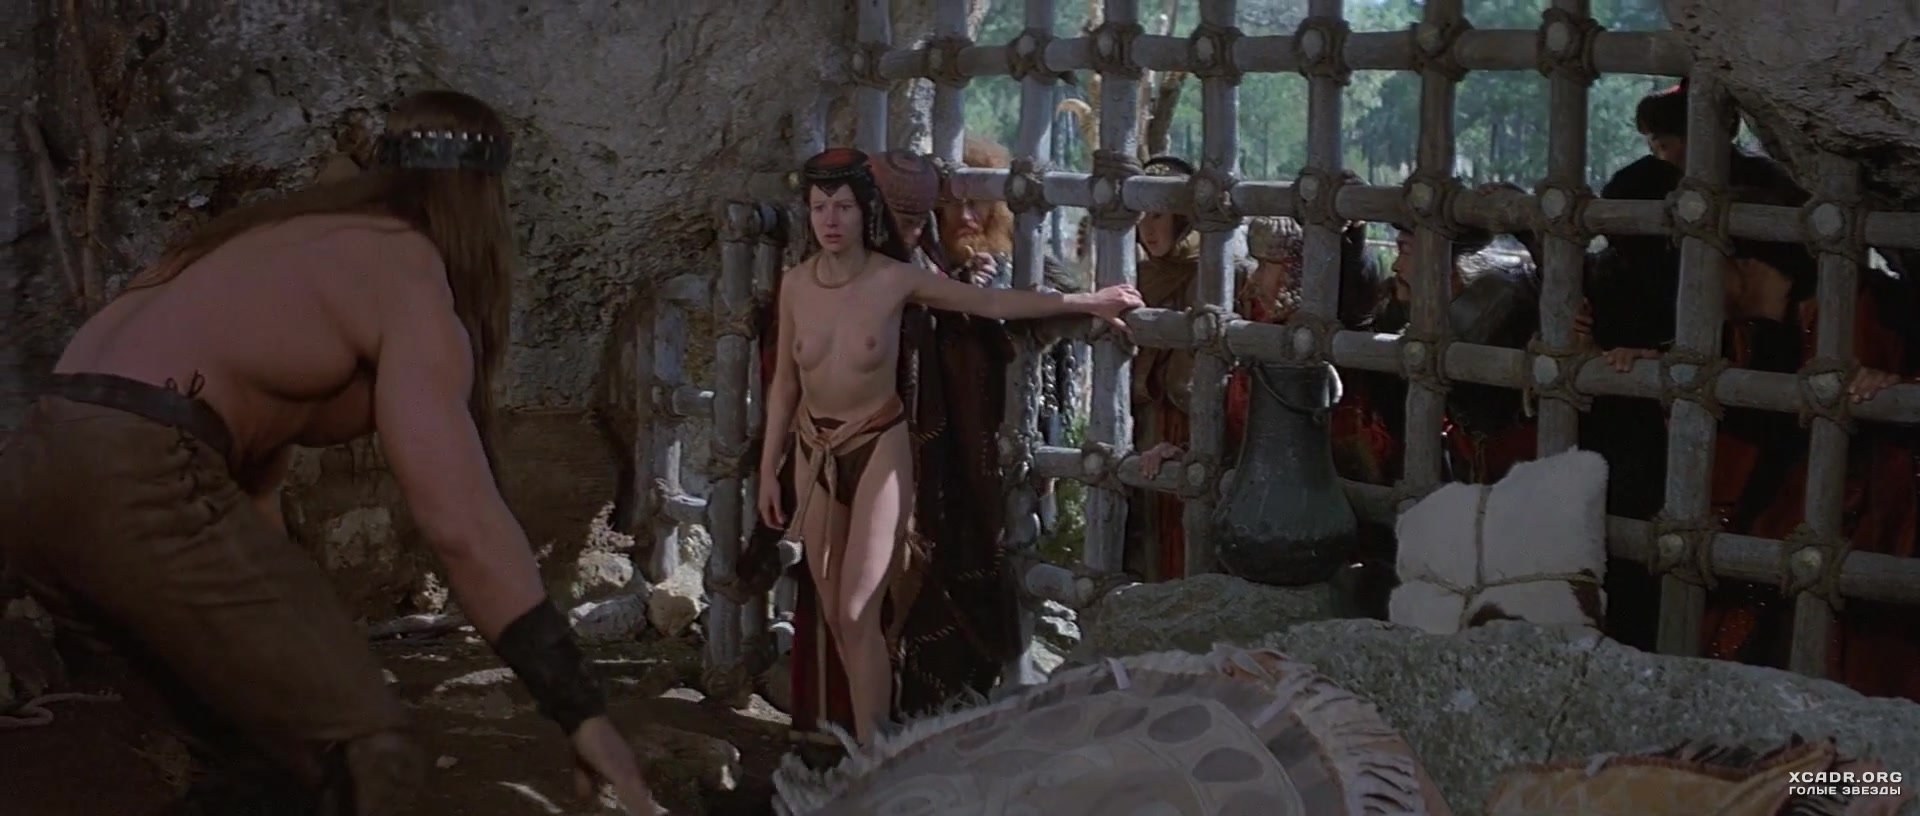 Conan the barbarian nude